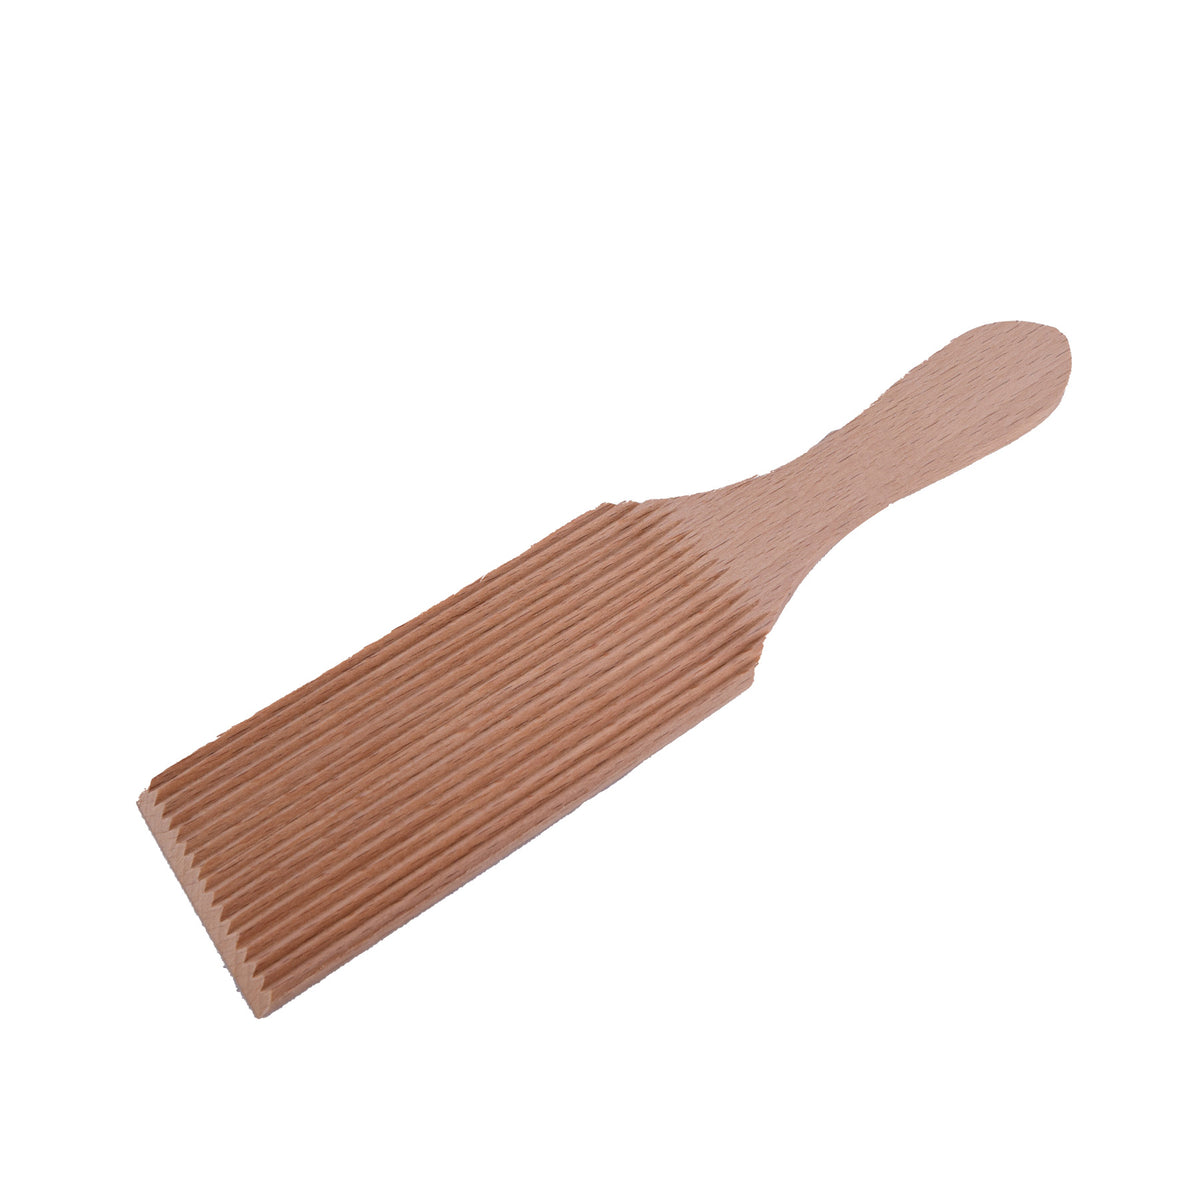 Wooden butter spatula, NaturalSize: 21 cm